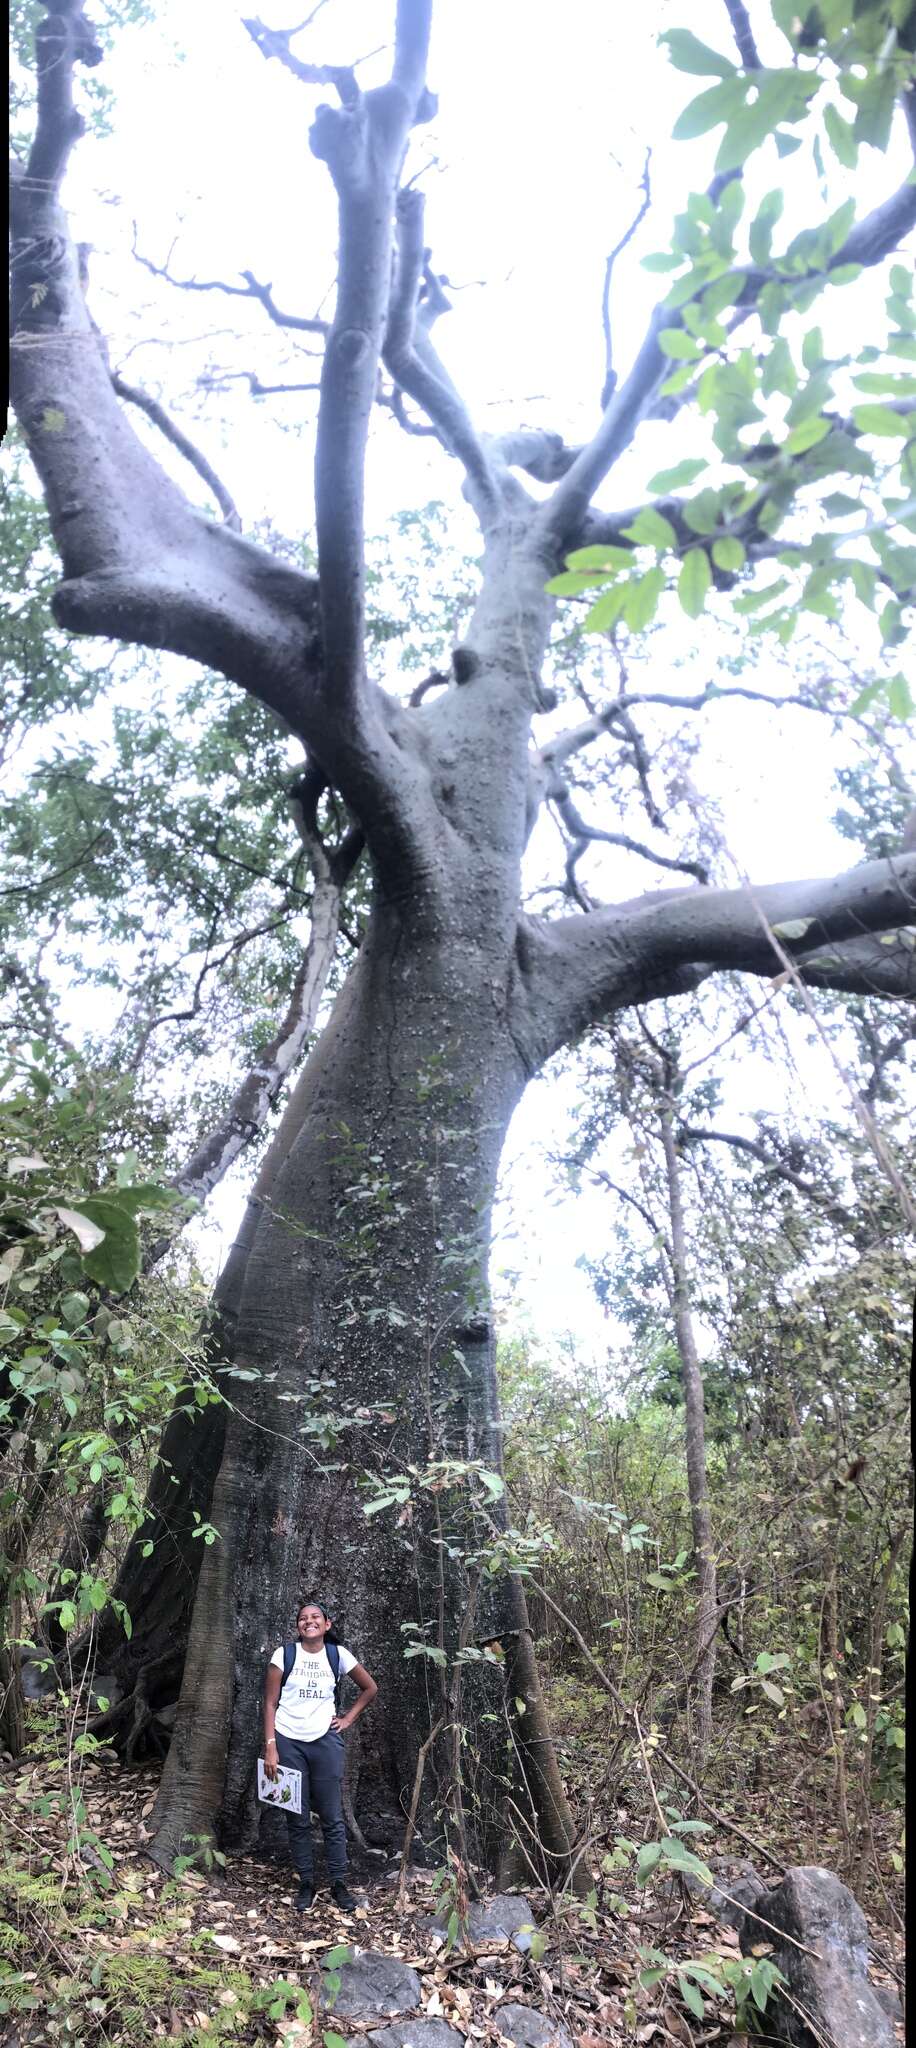 Image de Ceiba trischistandra (A. Gray) Bakhuisen